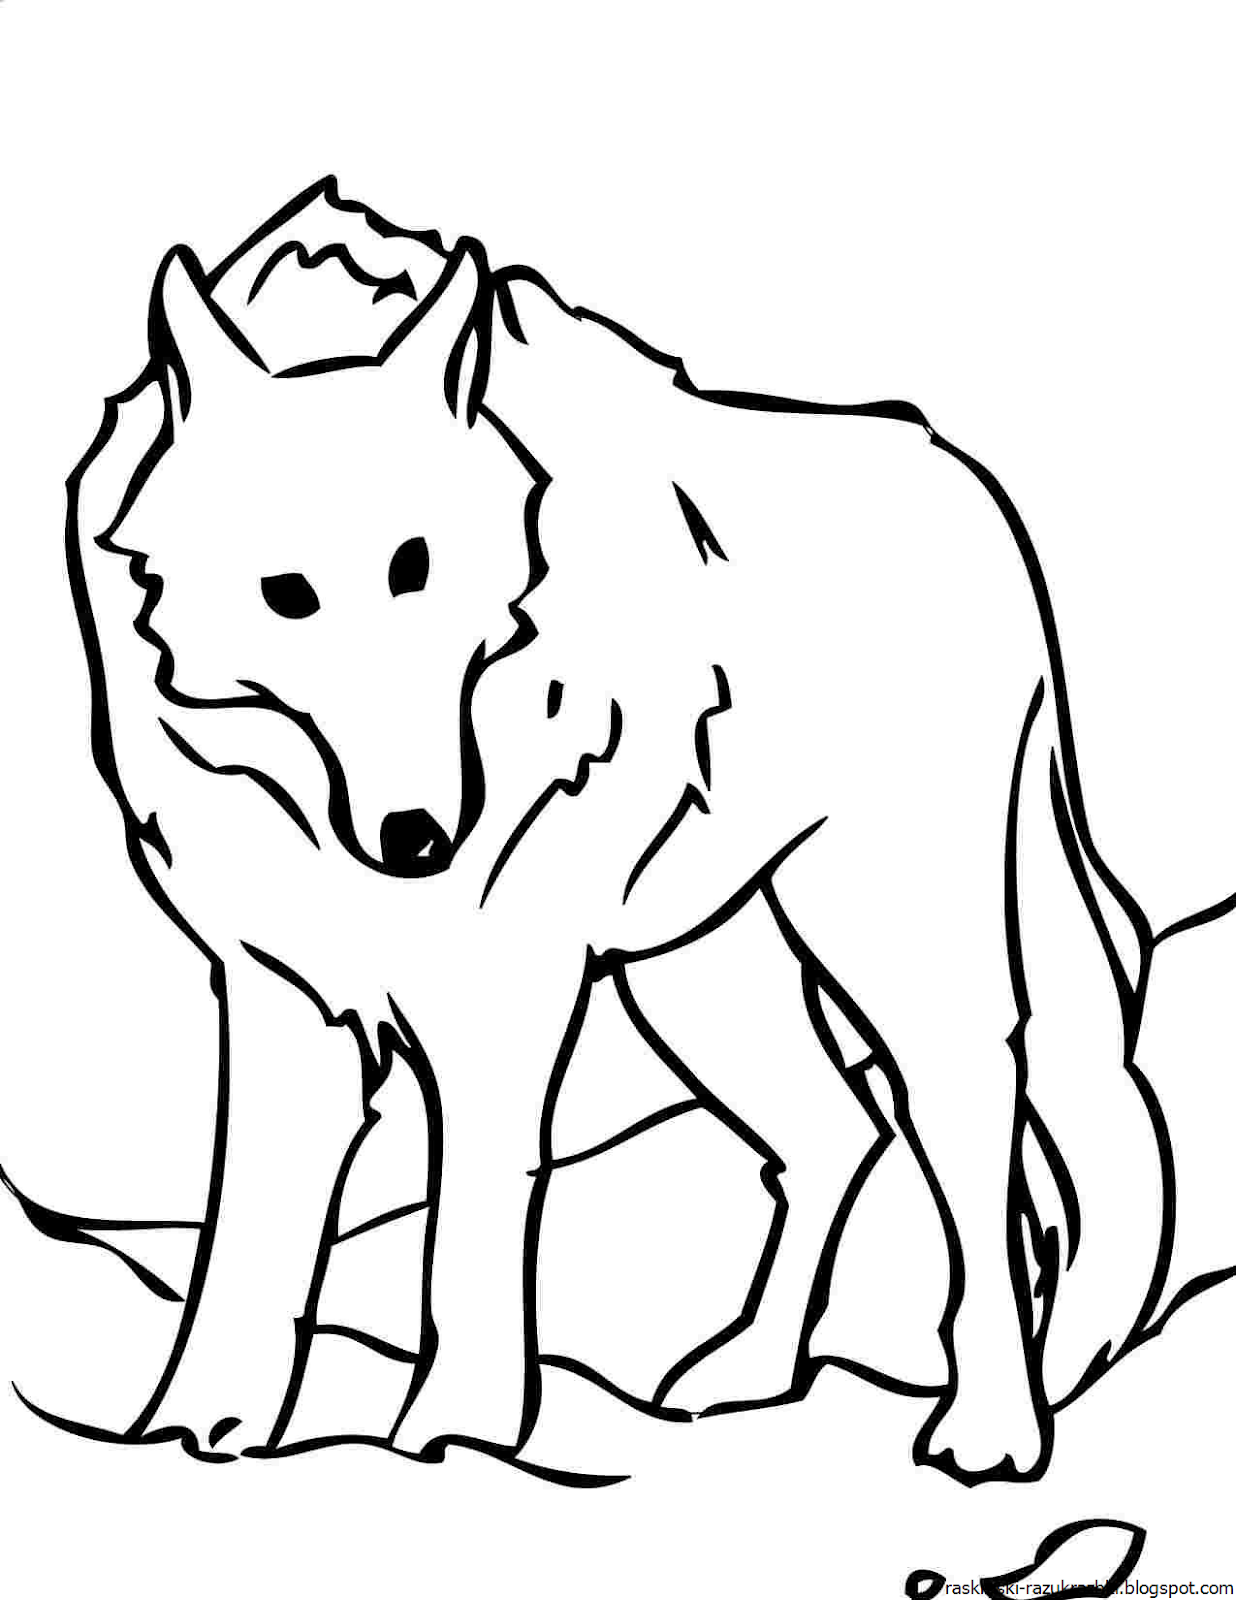 Раскраска волк. Волк раскраска для детей. Раскраска Волга. Волк рисунок для детей.